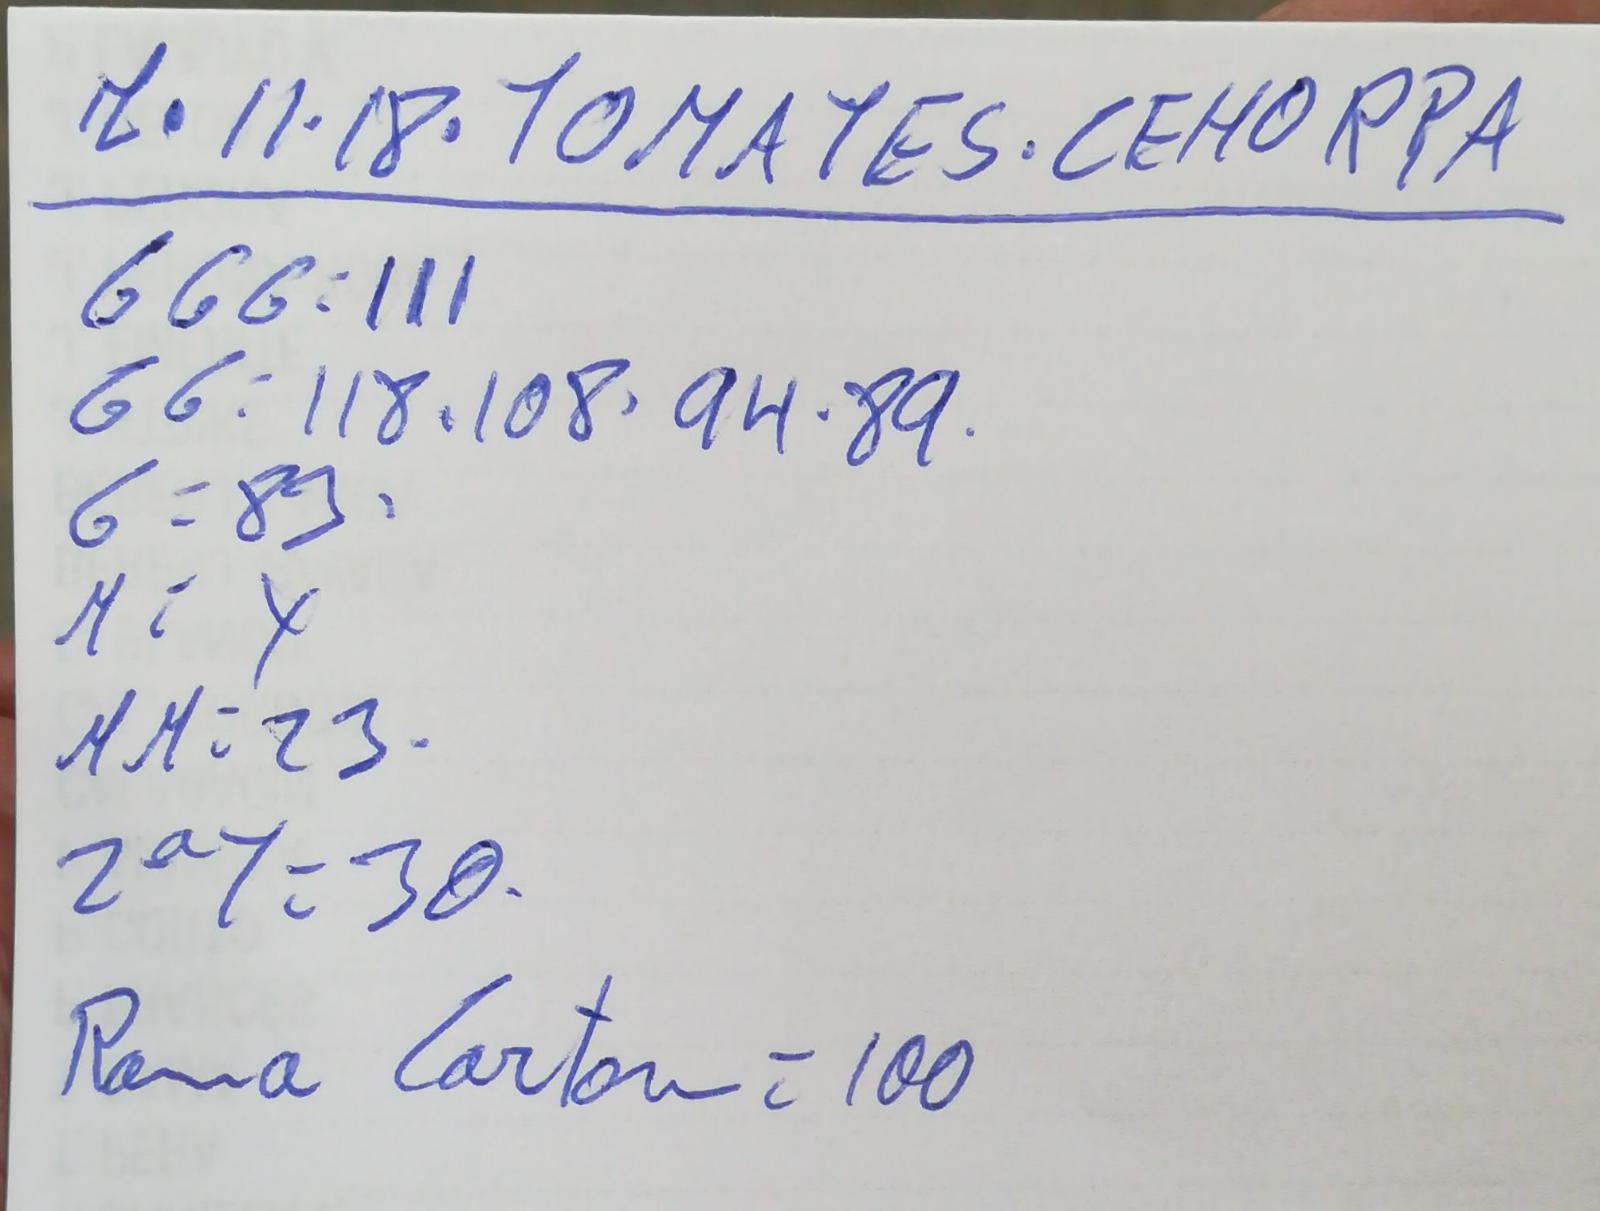 Subasta hortofrutícola Costa de Almería Cehorpa Tomates 7 de Noviembre